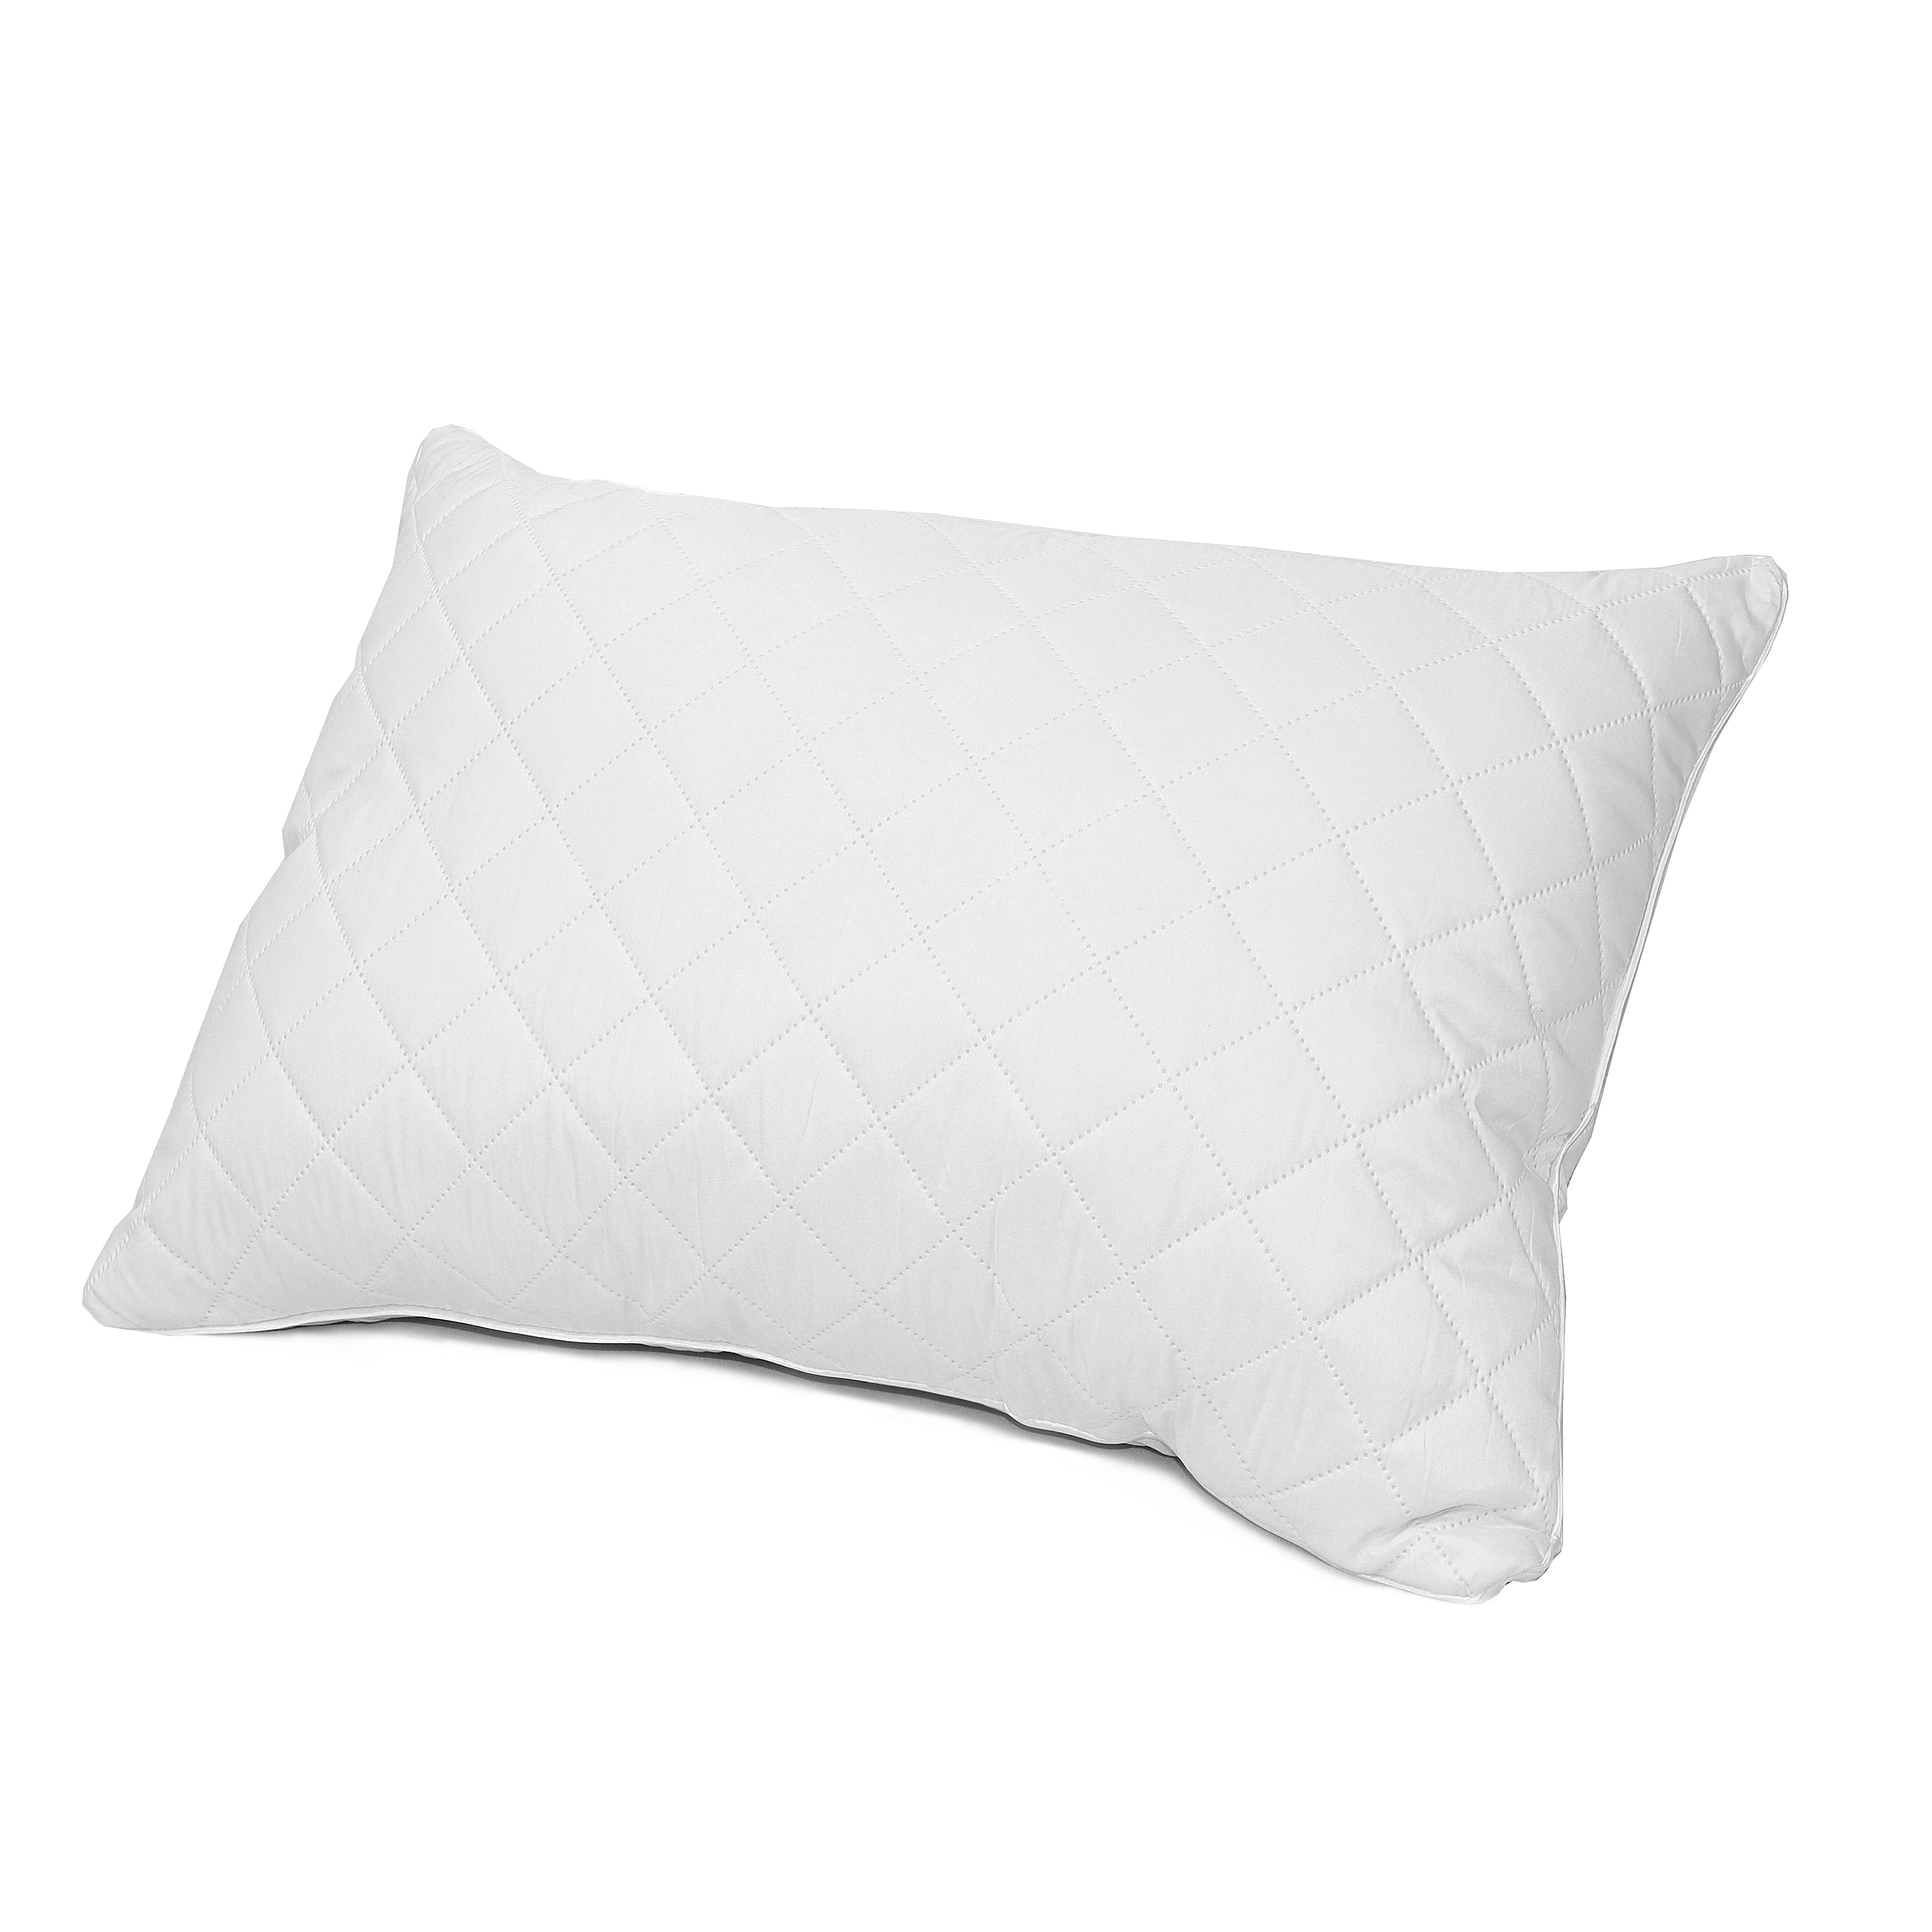 walmart cheap pillows